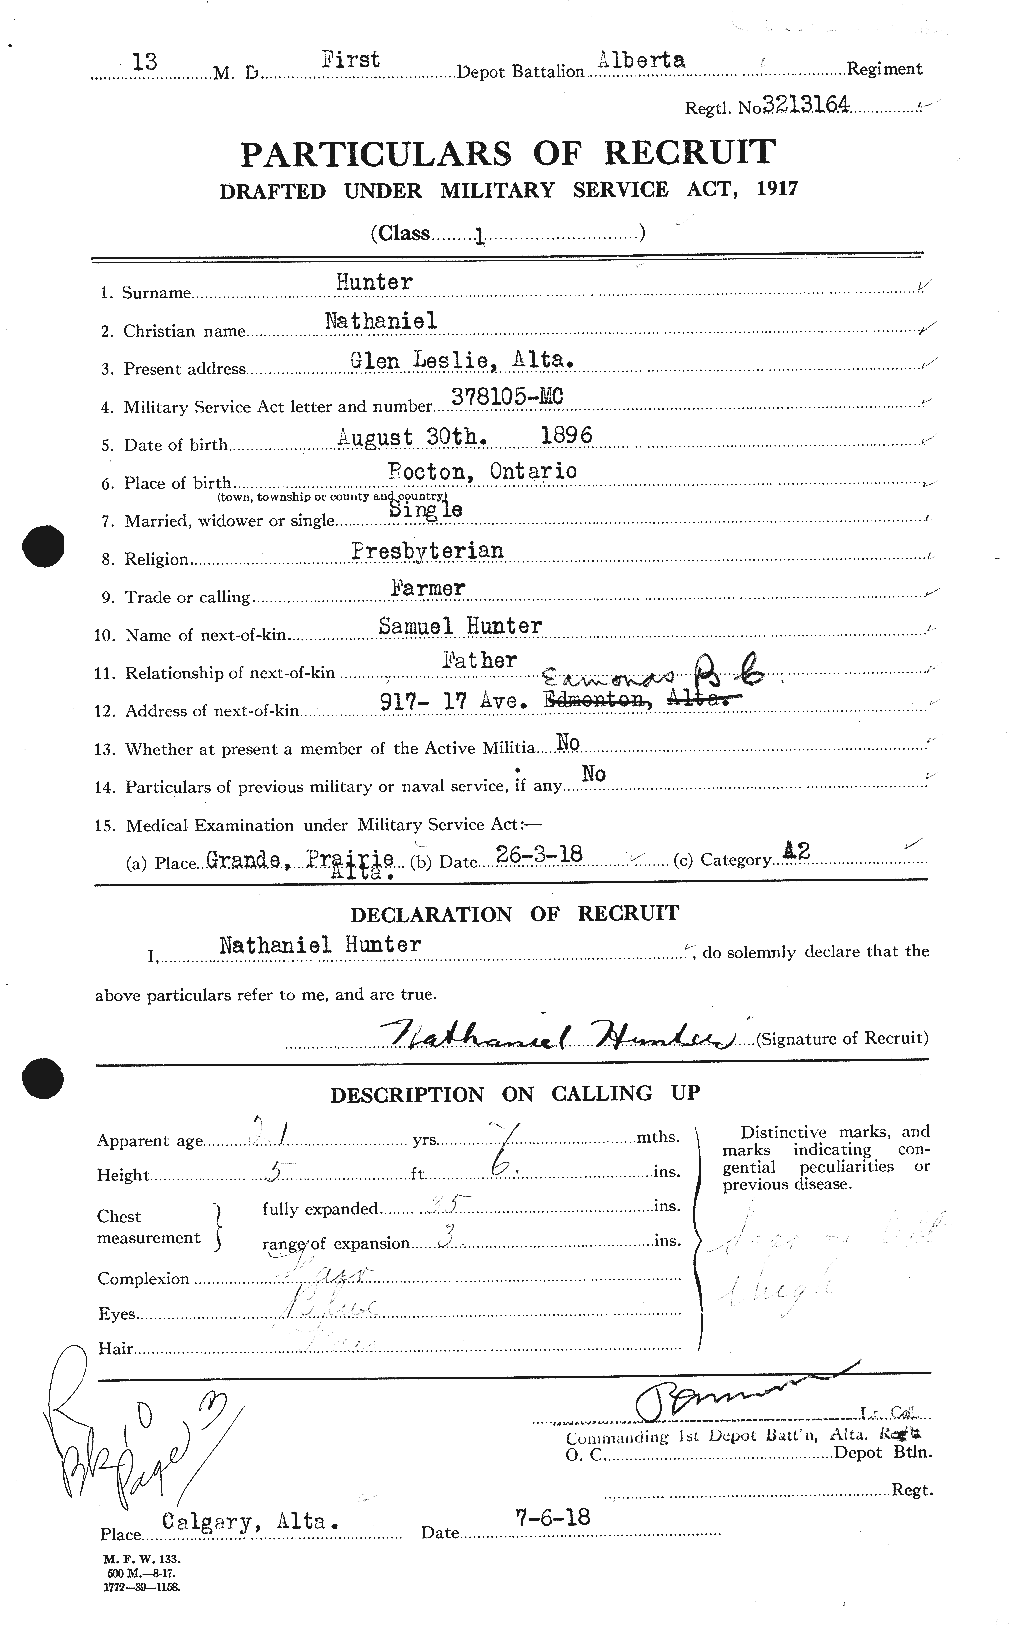 Dossiers du Personnel de la Première Guerre mondiale - CEC 406422a